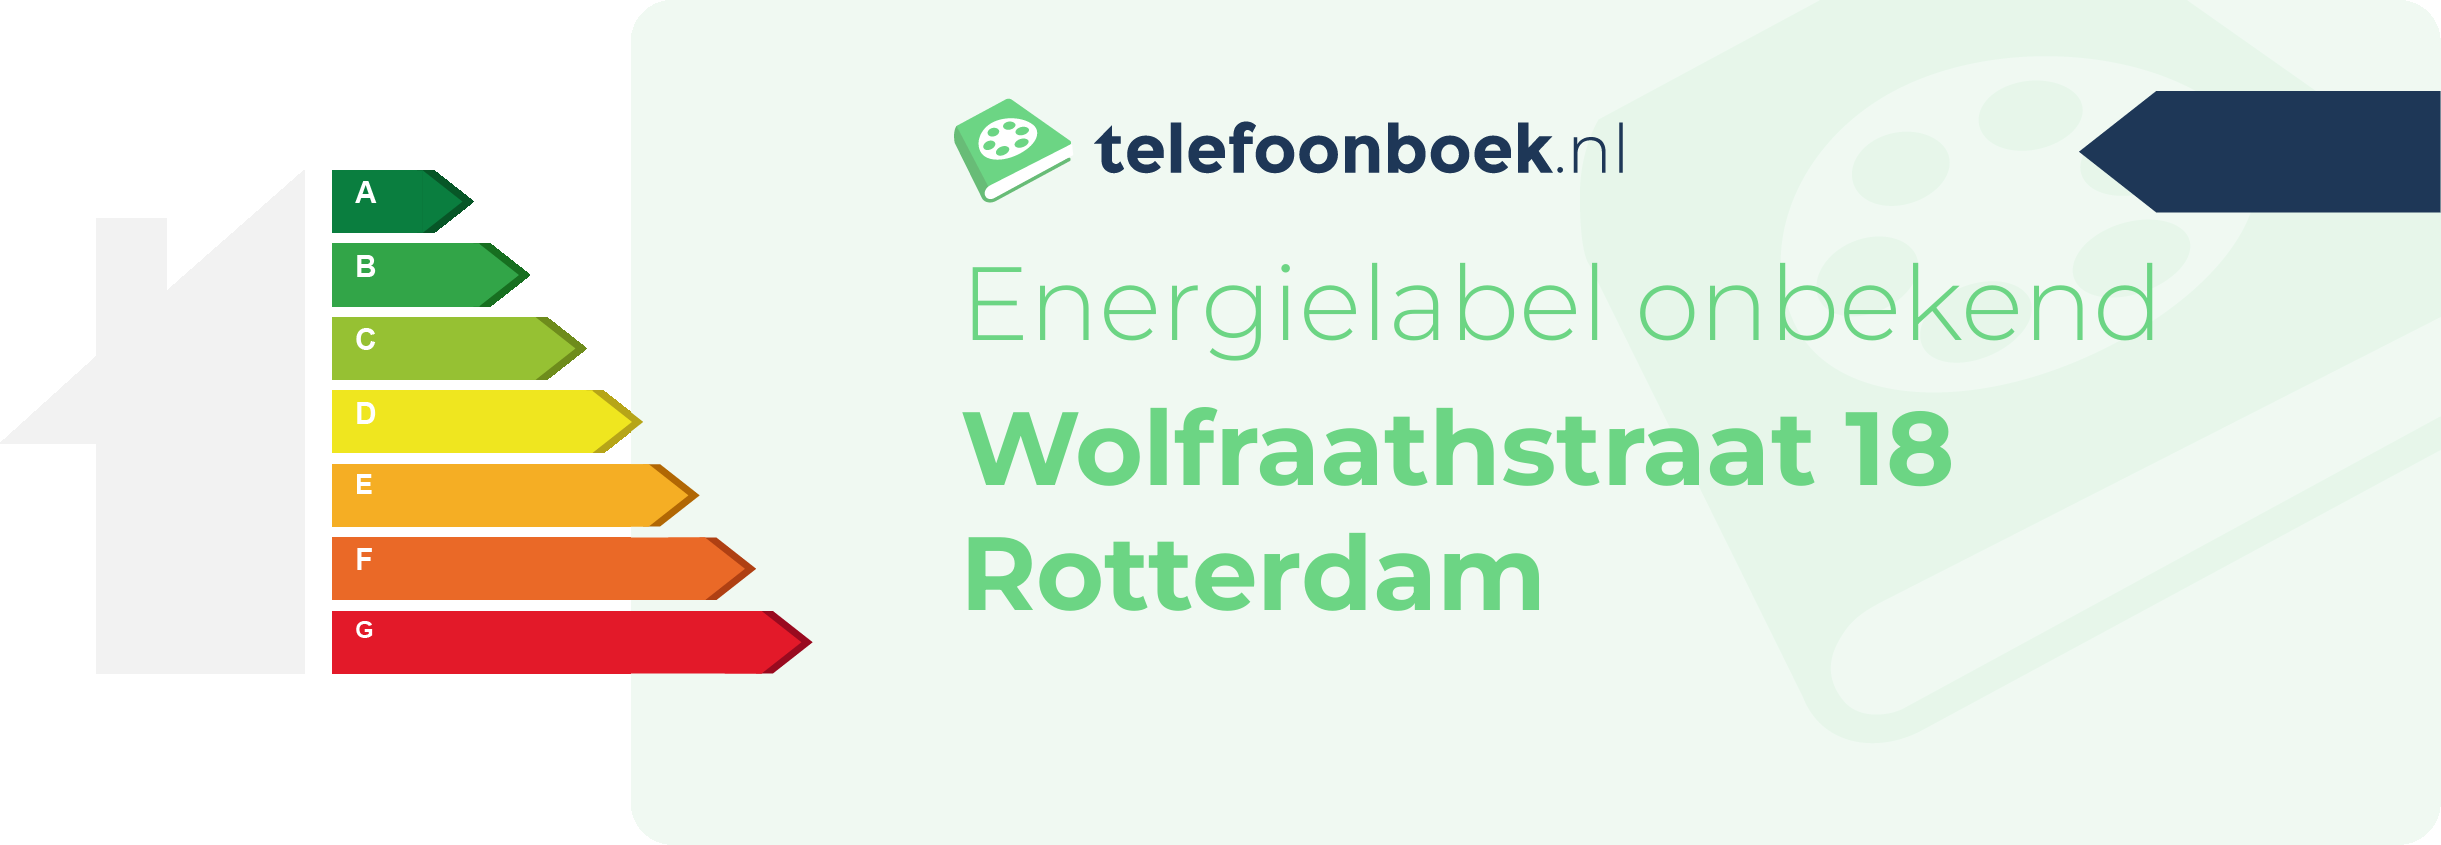 Energielabel Wolfraathstraat 18 Rotterdam